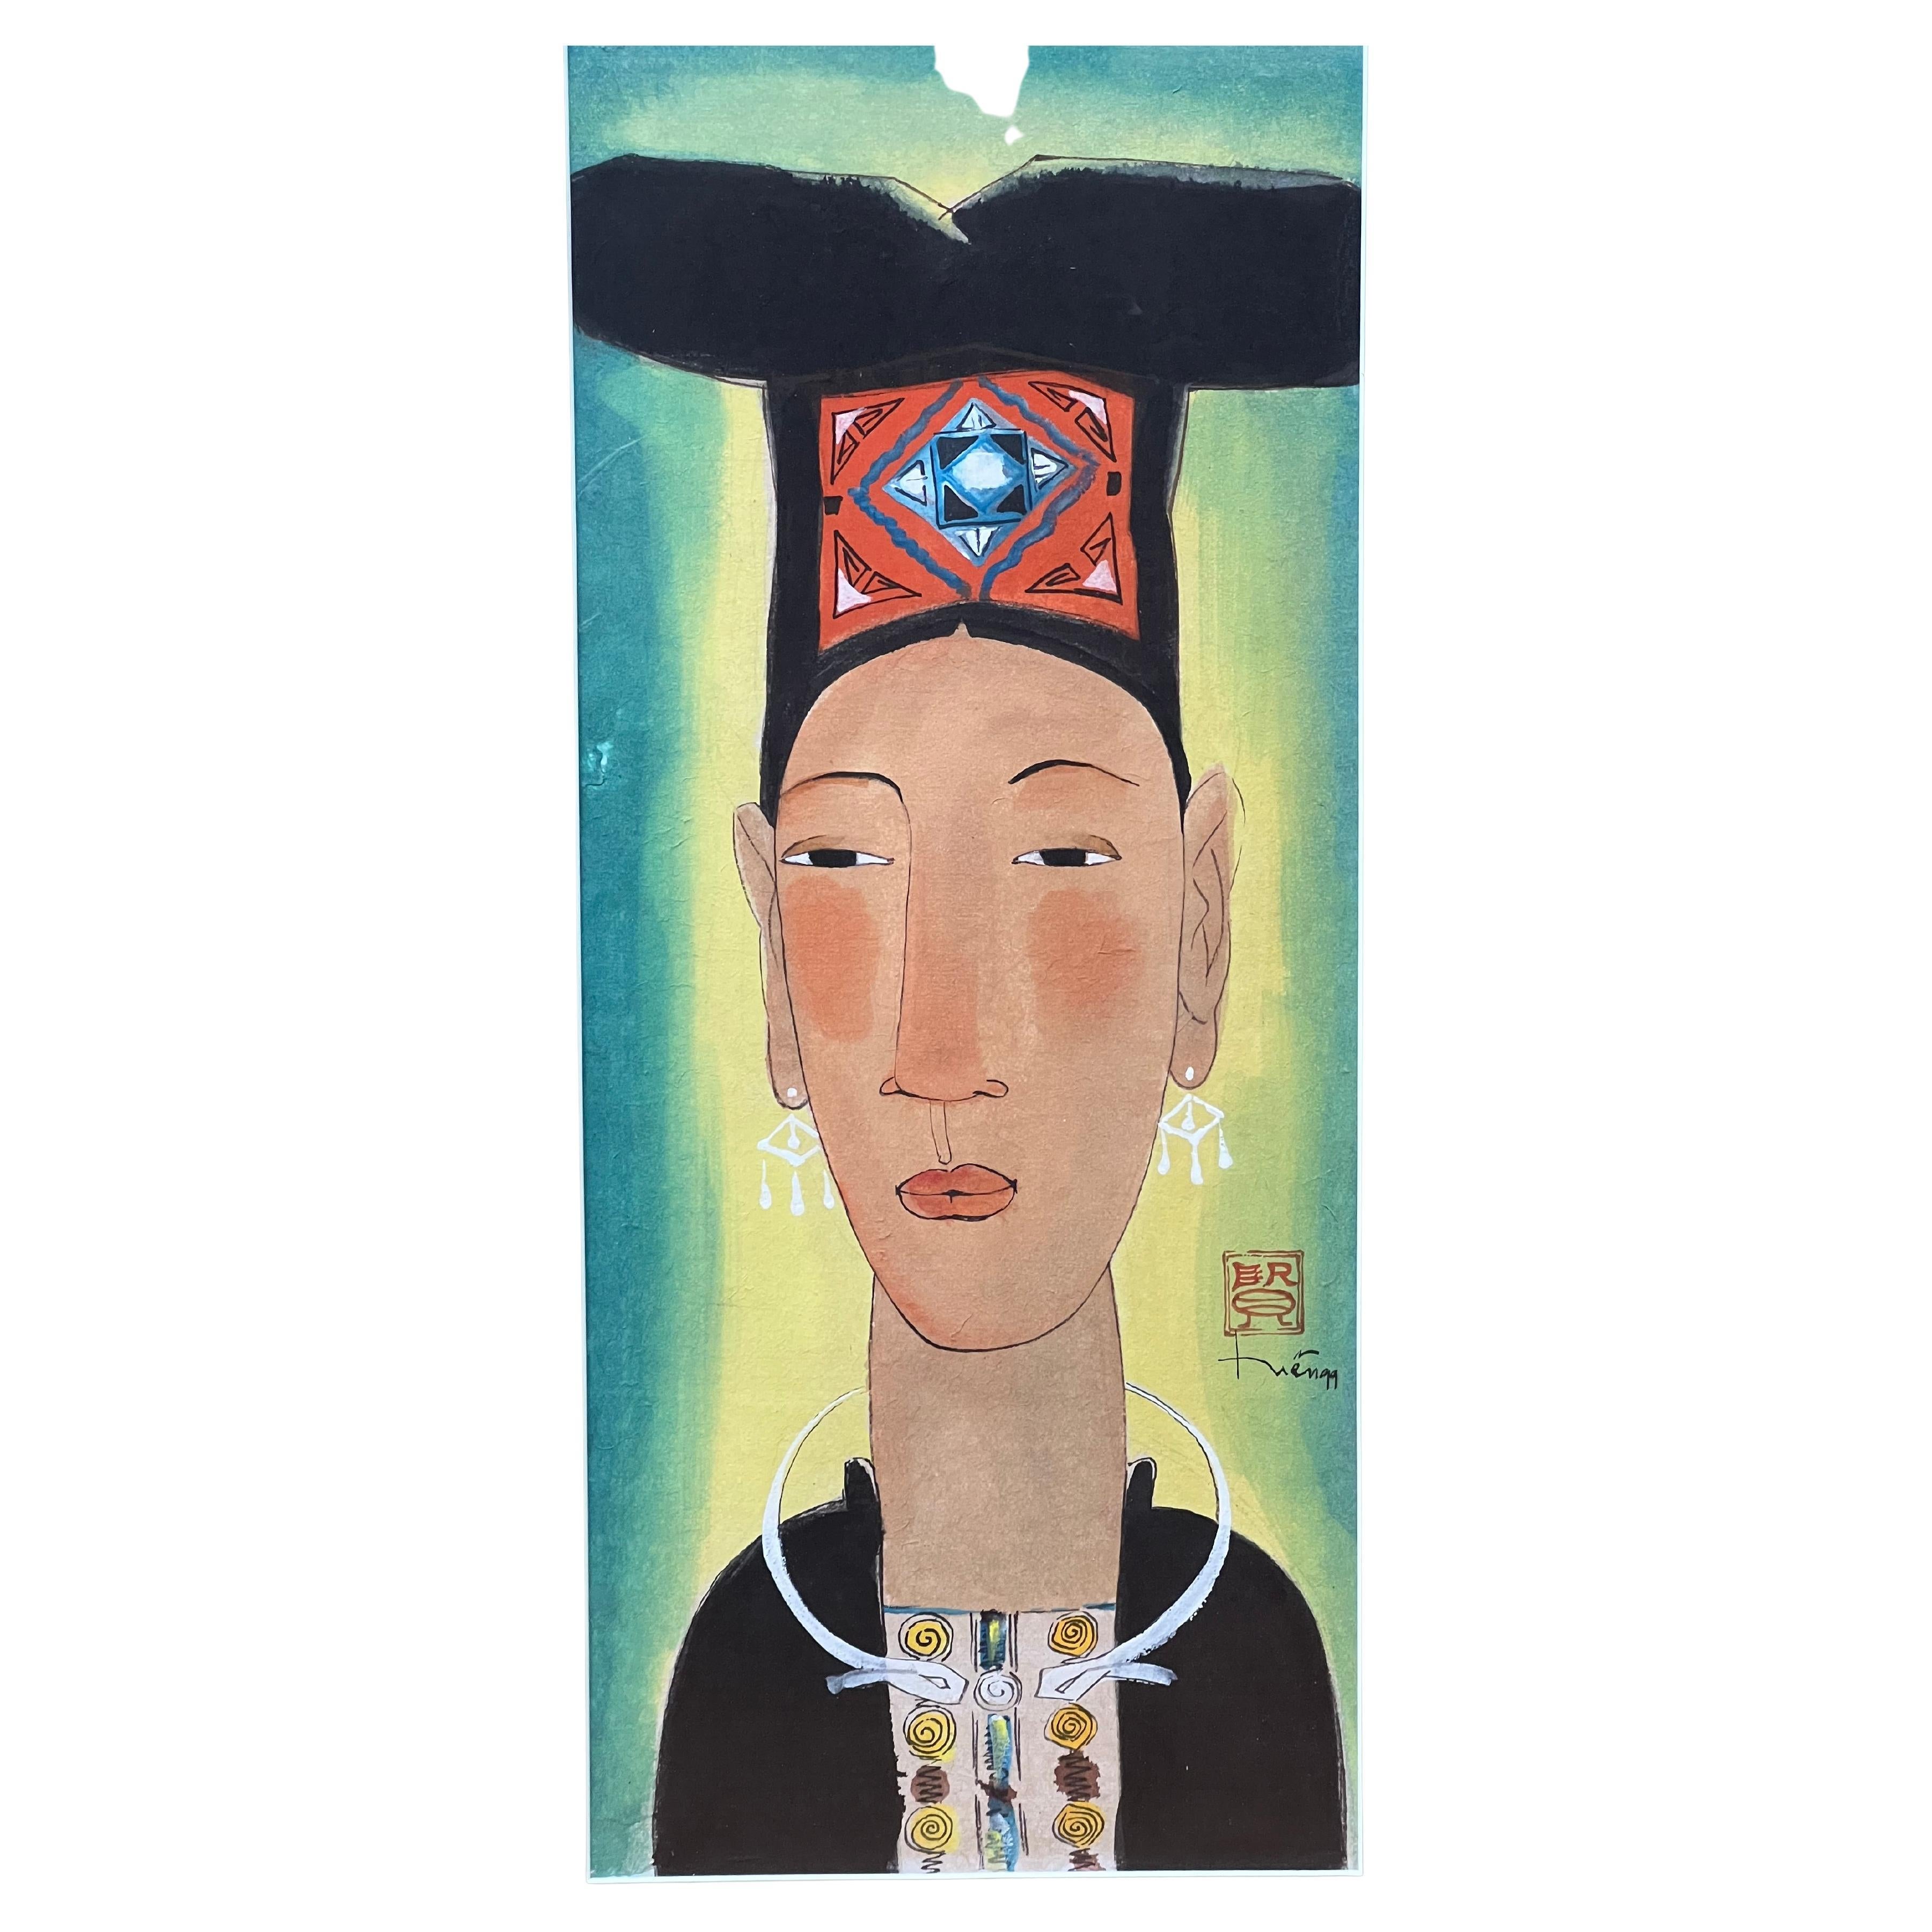 Diese traditionelle asiatische Frauenporträtlithografie zeigt eine Person mit einem hohen schwarzen Hut auf grünem Hintergrund. Ein rotes und blaues, rechteckiges Stück Stoff ist auf der Vorderseite des Kopfschmucks zu sehen und setzt einen